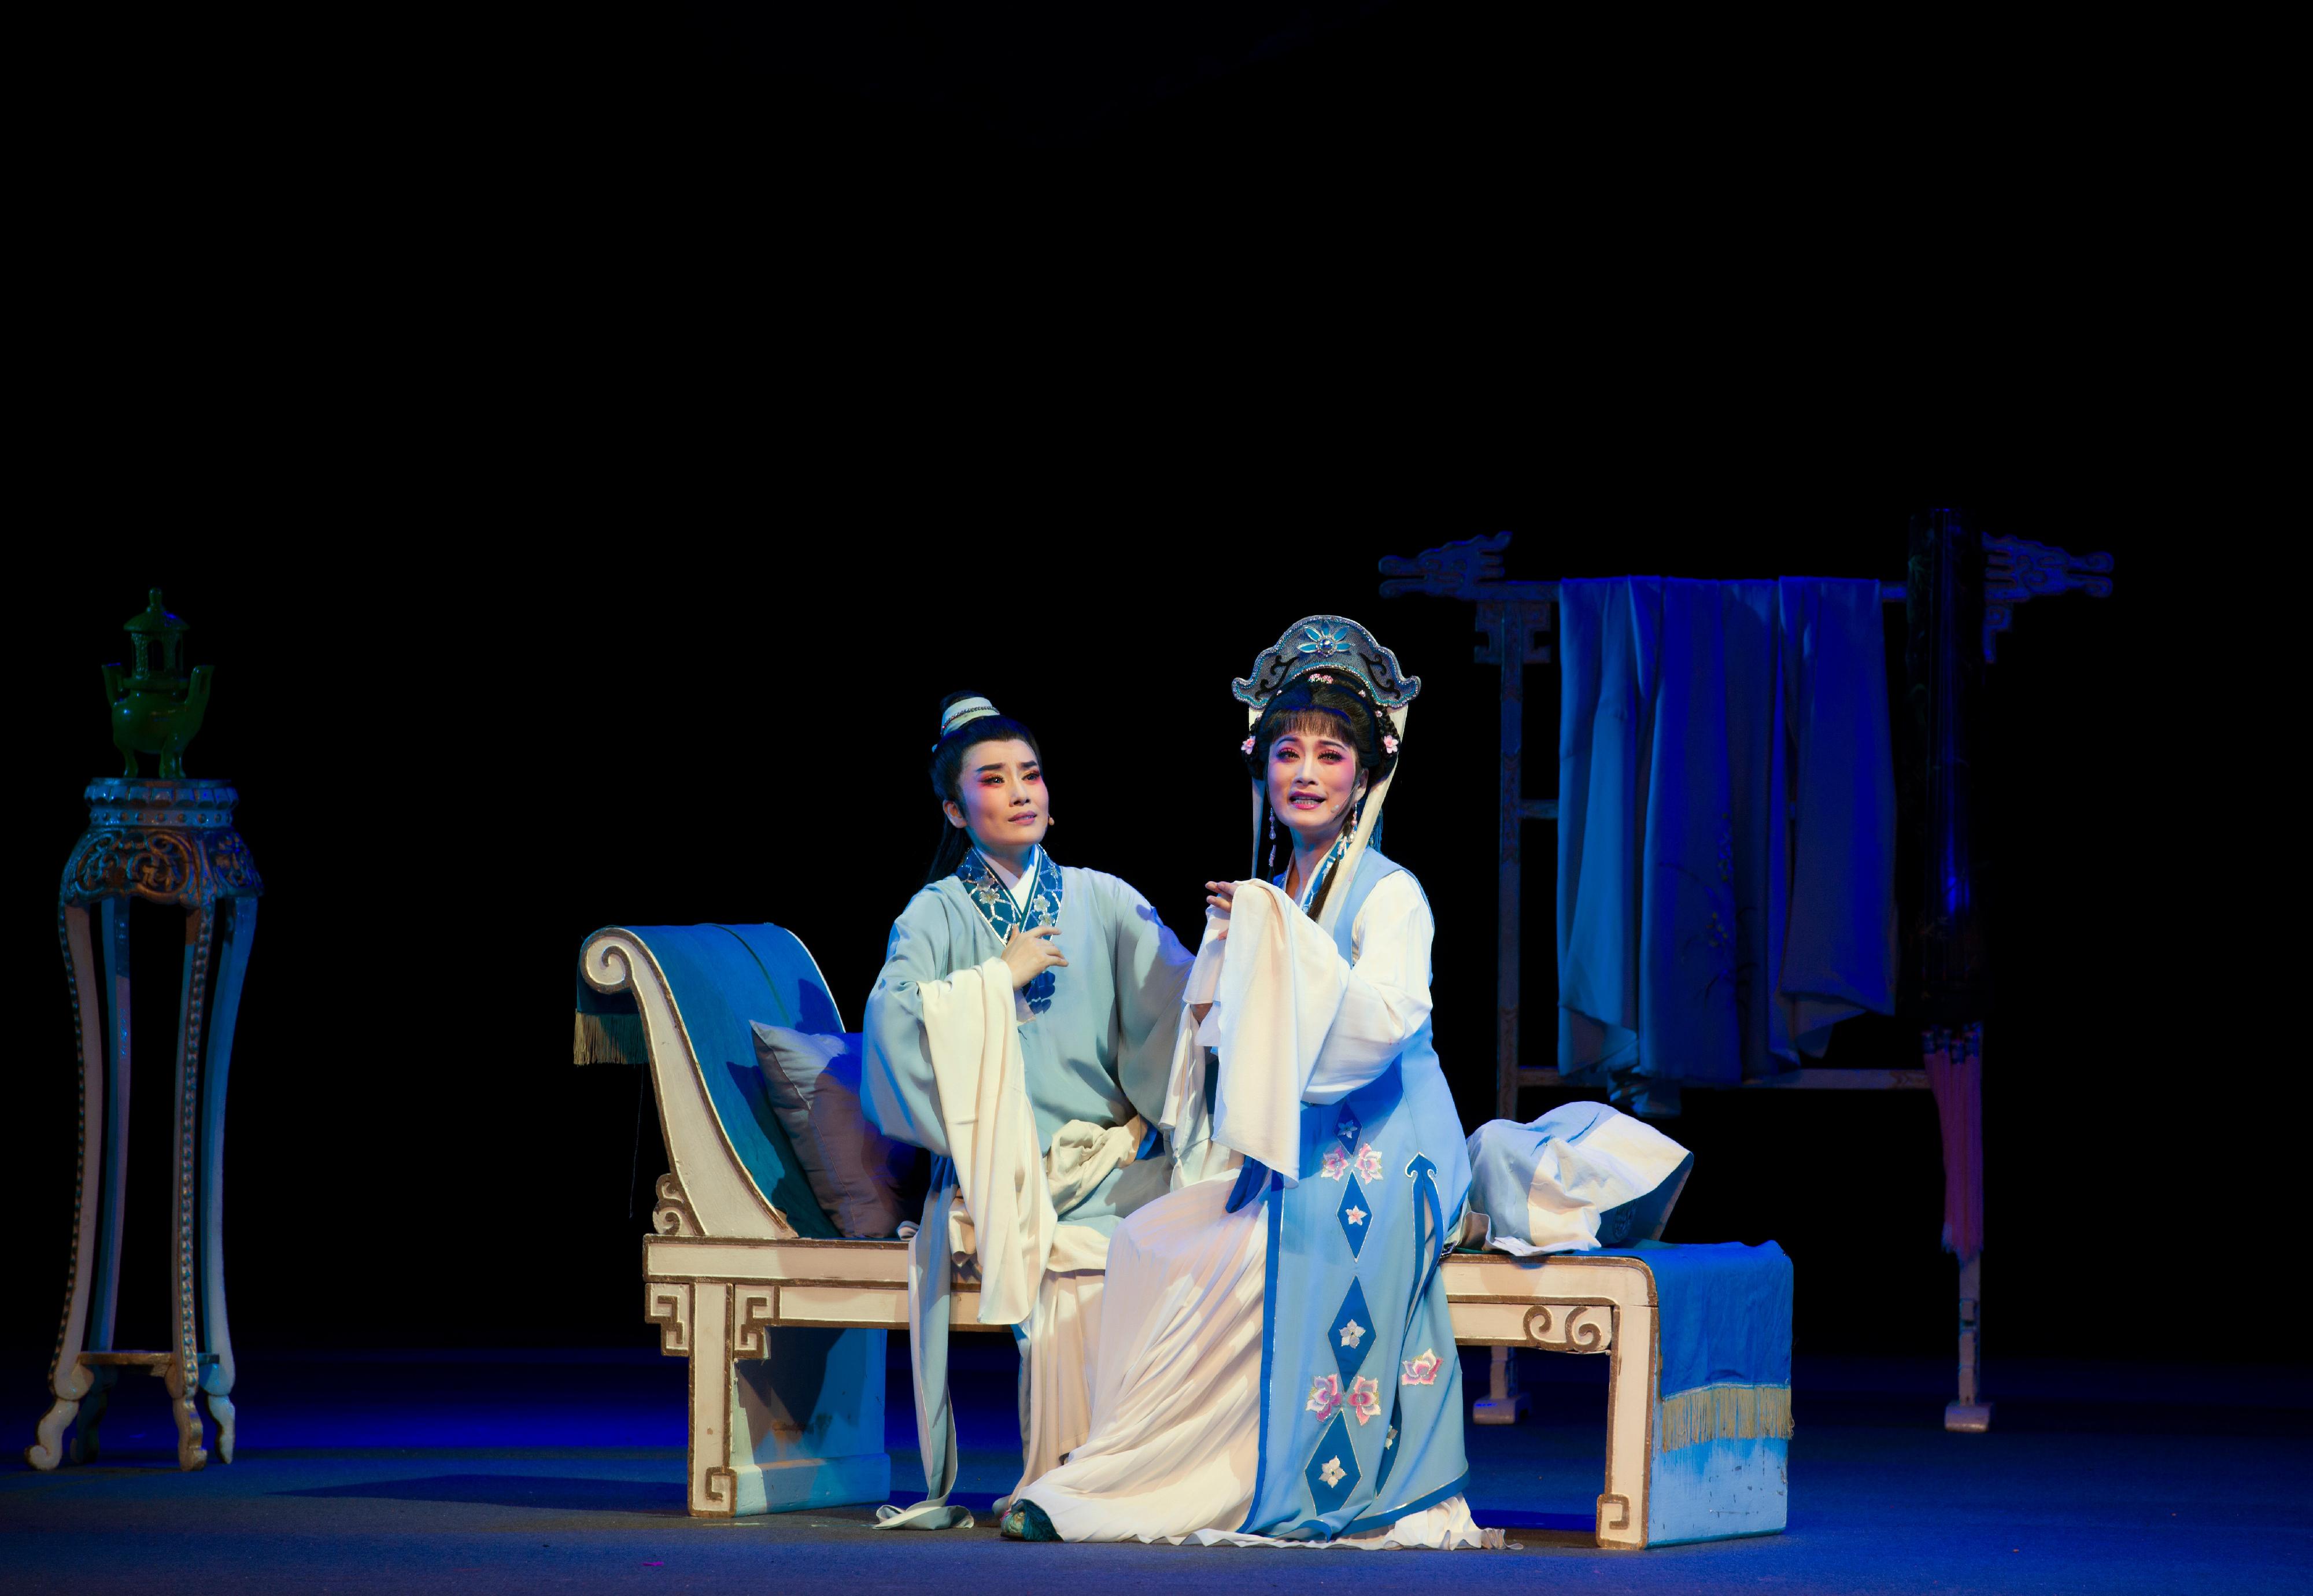 福建芳华越剧院于首届「中华文化节」上演三场精彩越剧。图示《玉蜻蜓》剧照。
